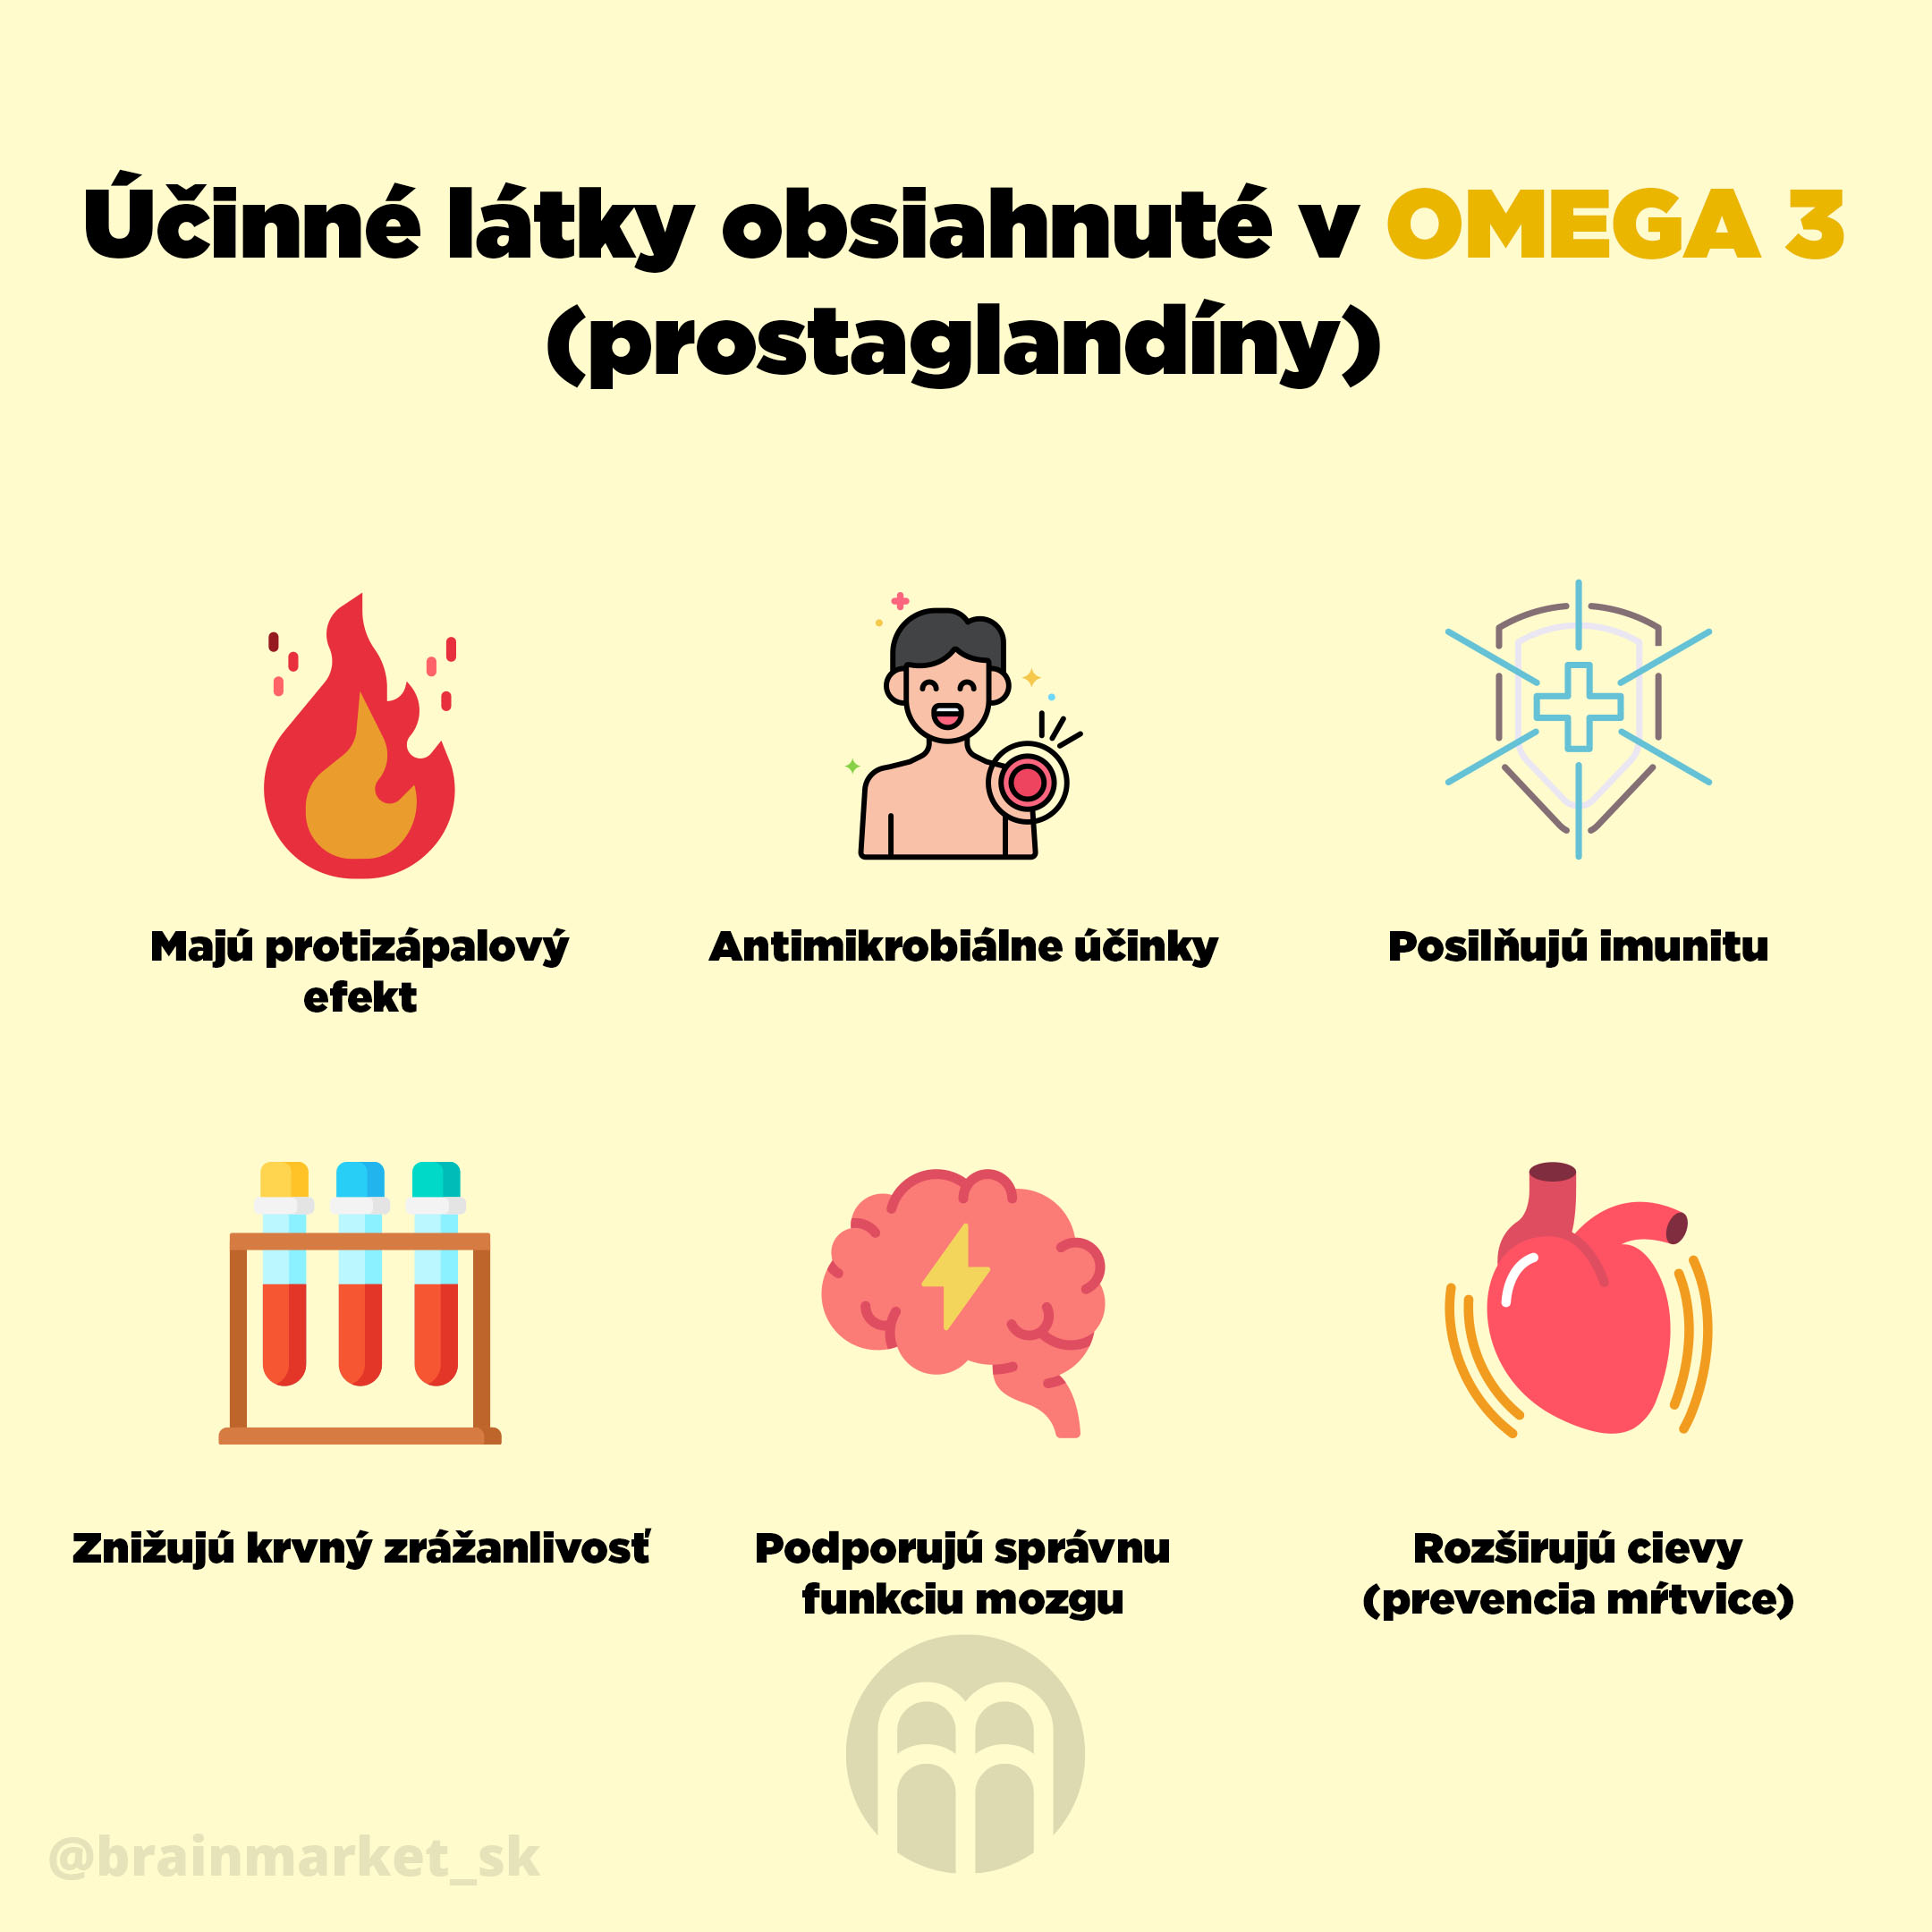 ucinne_latky_obsiahnute_v_omega_3_infografika_brainmarket_SK